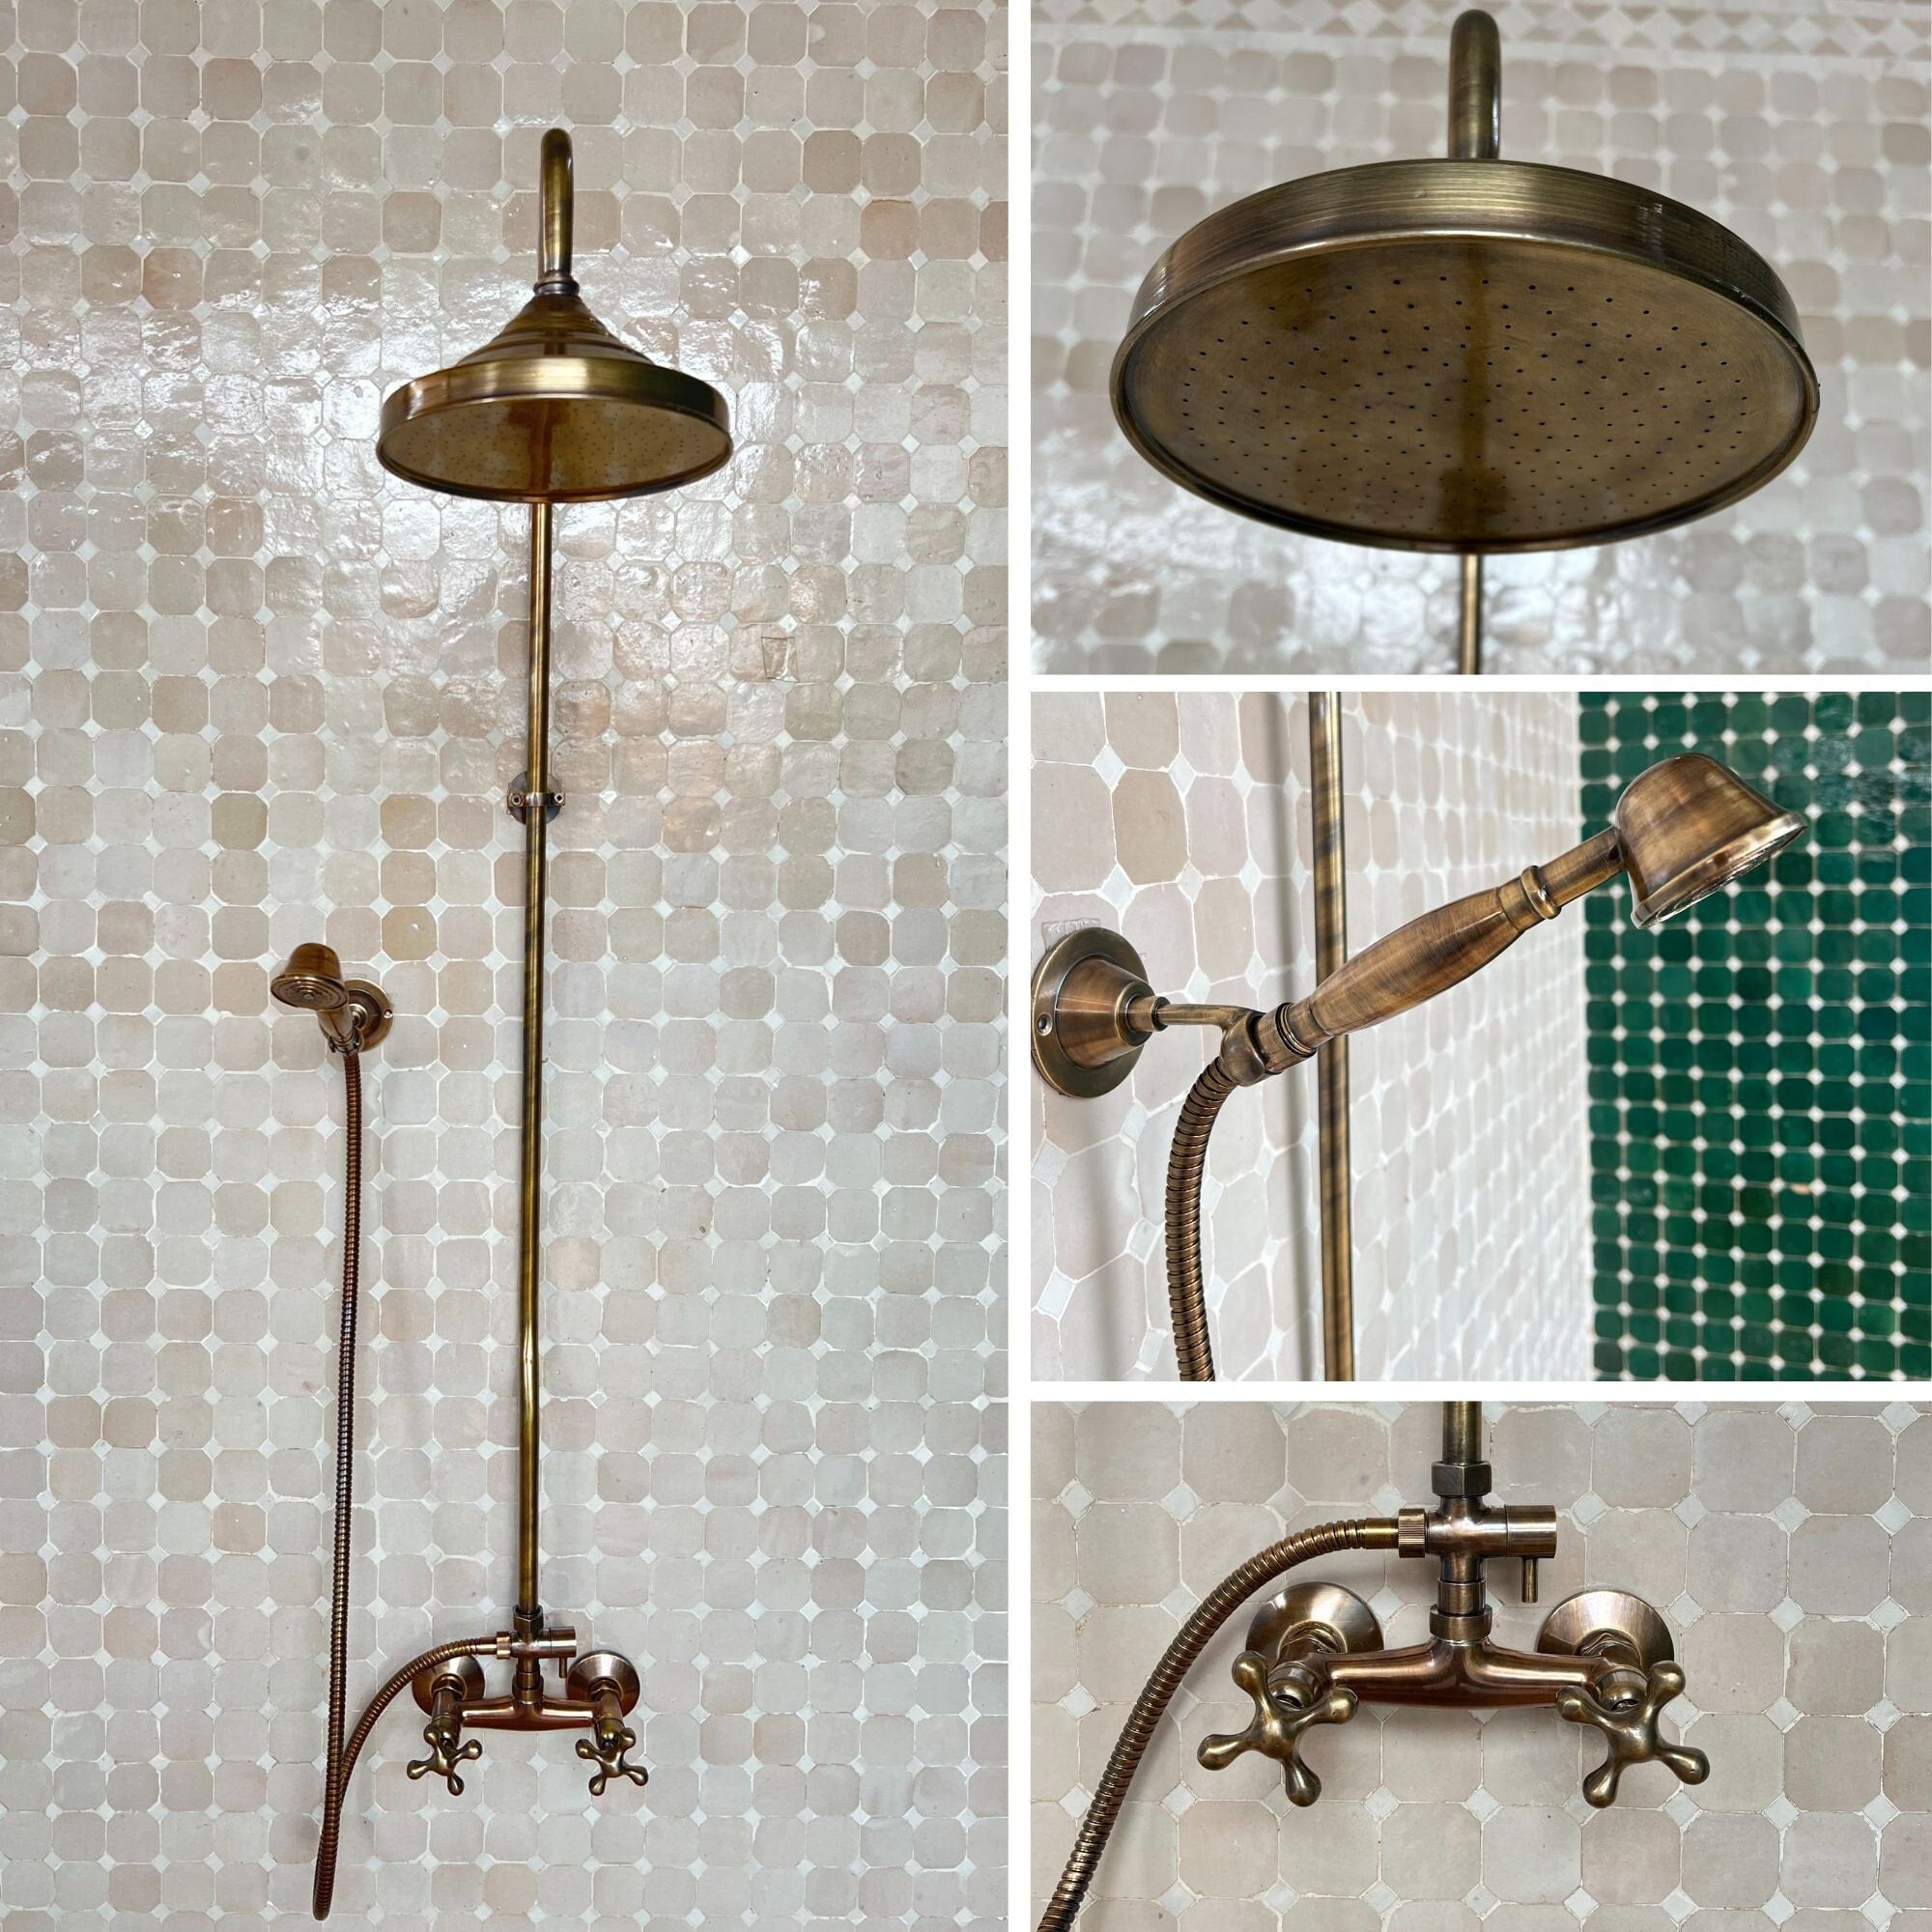 Antique Bronze Shower System, Round Shower Head with High Pressure - Solid Brass